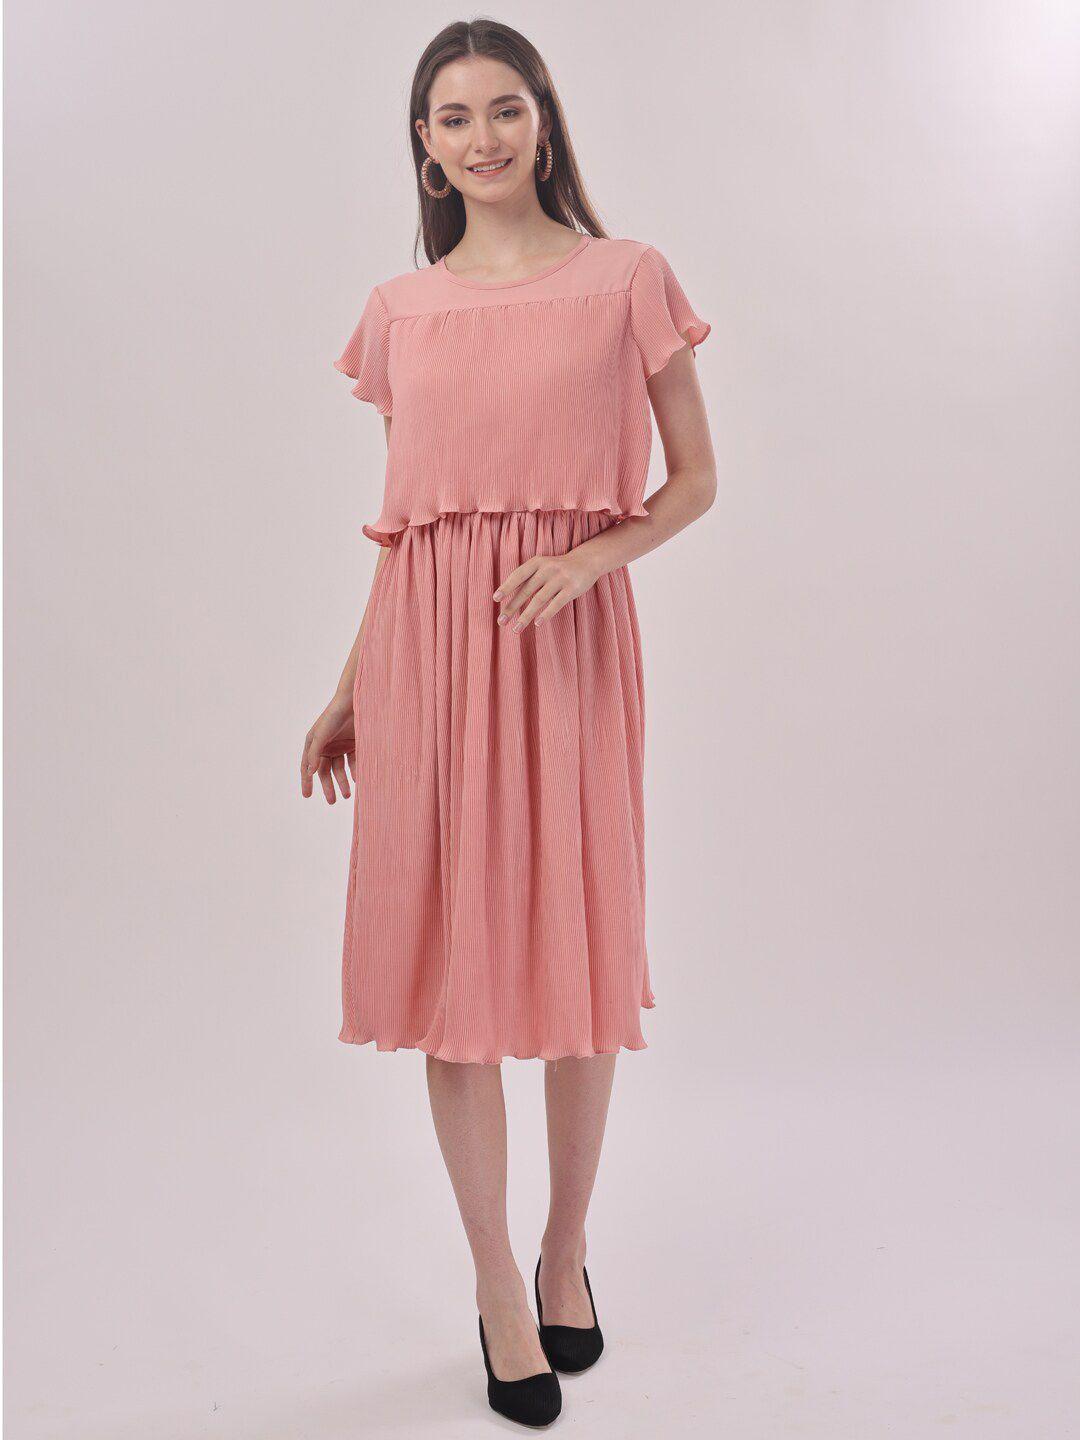 prettify peach-coloured midi dress